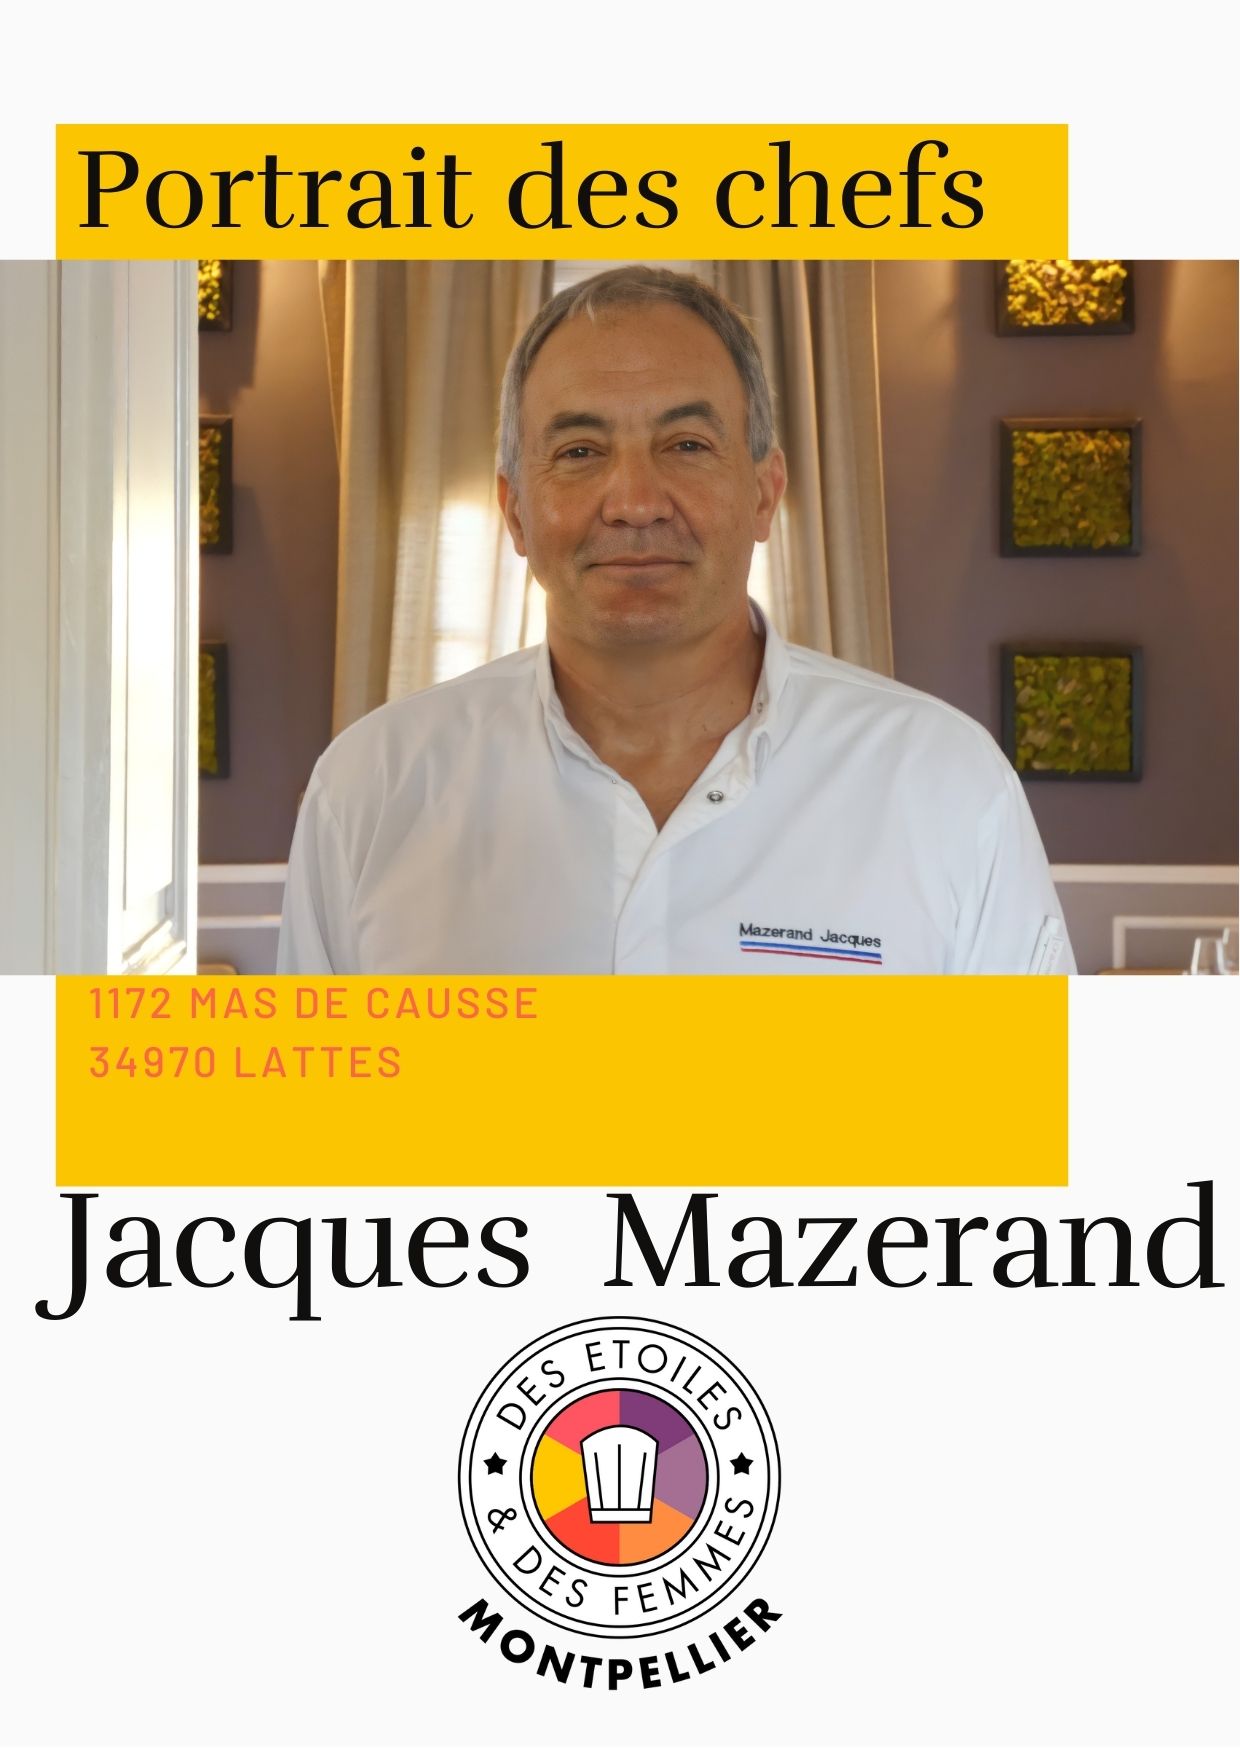 Portrait des chefs : Le Mazerand